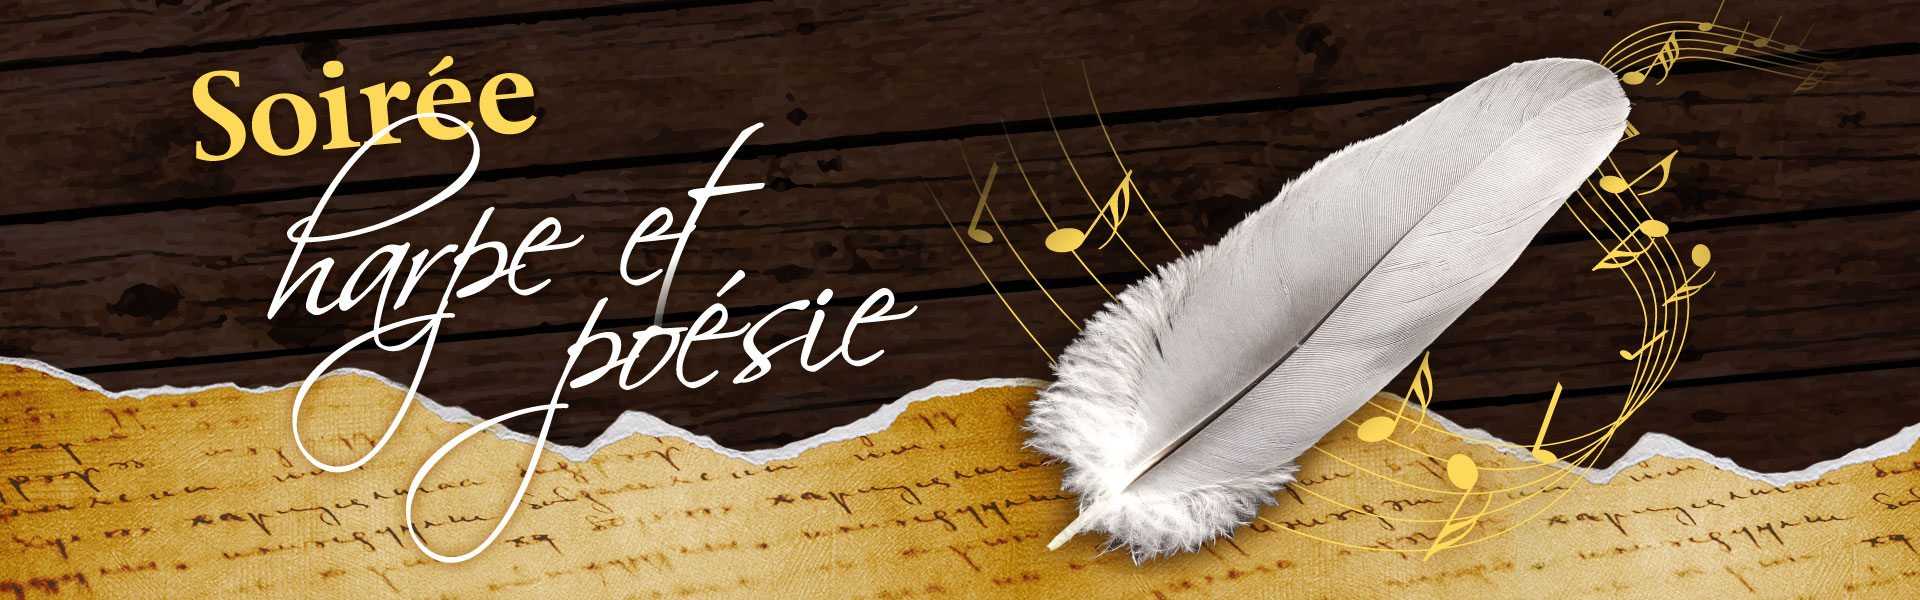 Visuel de boiserie, de texte manuscrit, d'une plume et d'une portée musicale accompagné du logo de l'évènement